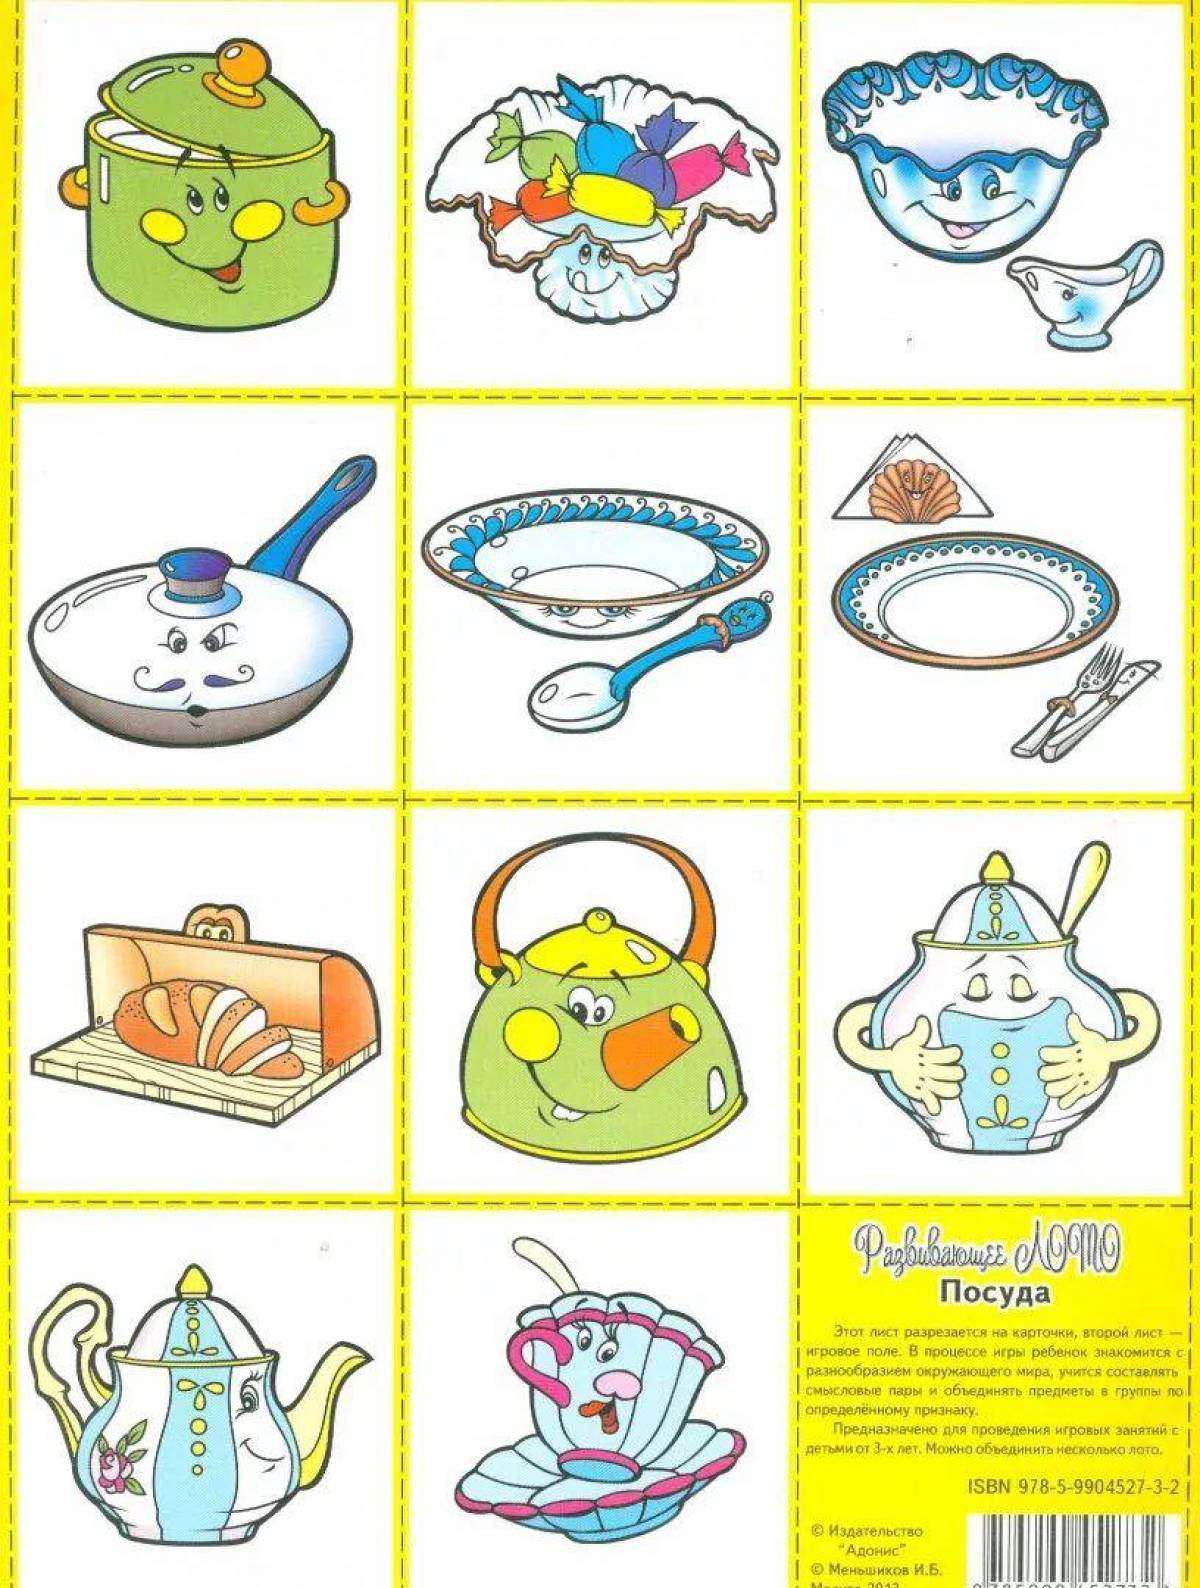 Посуда для детей дошкольного возраста #25